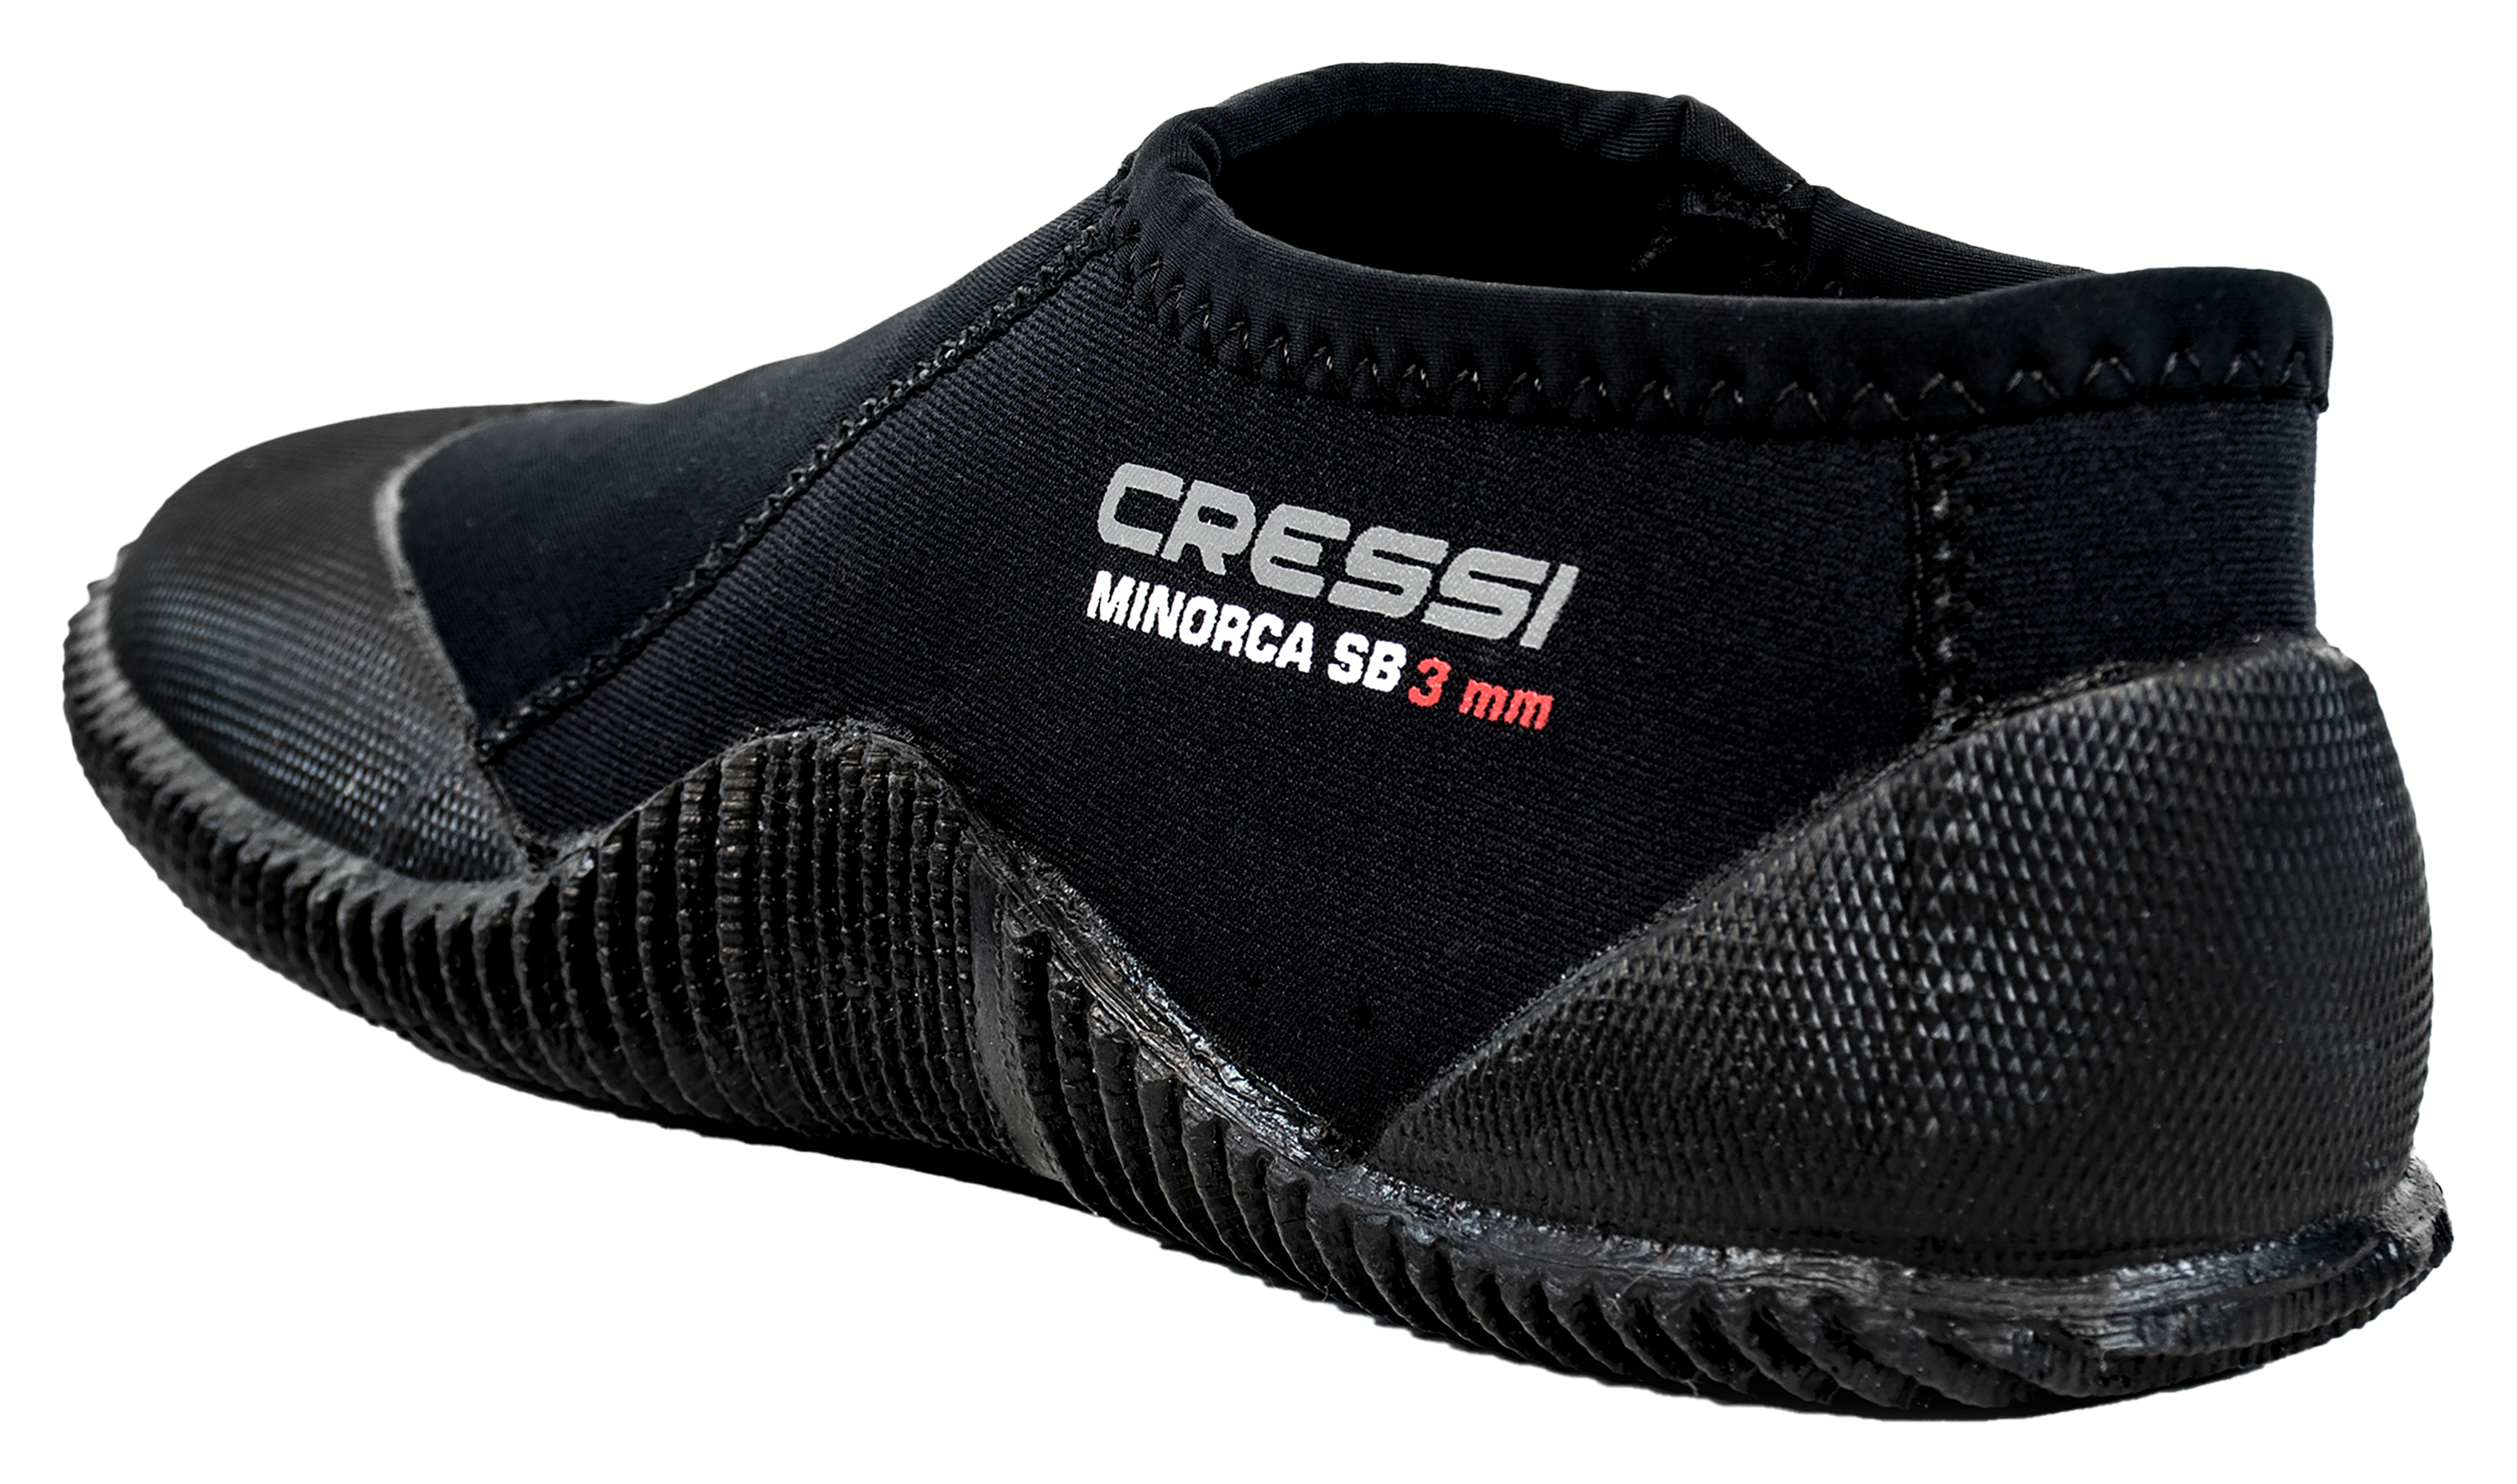 Cressi Minorca Short Boots for Men - Black - 9